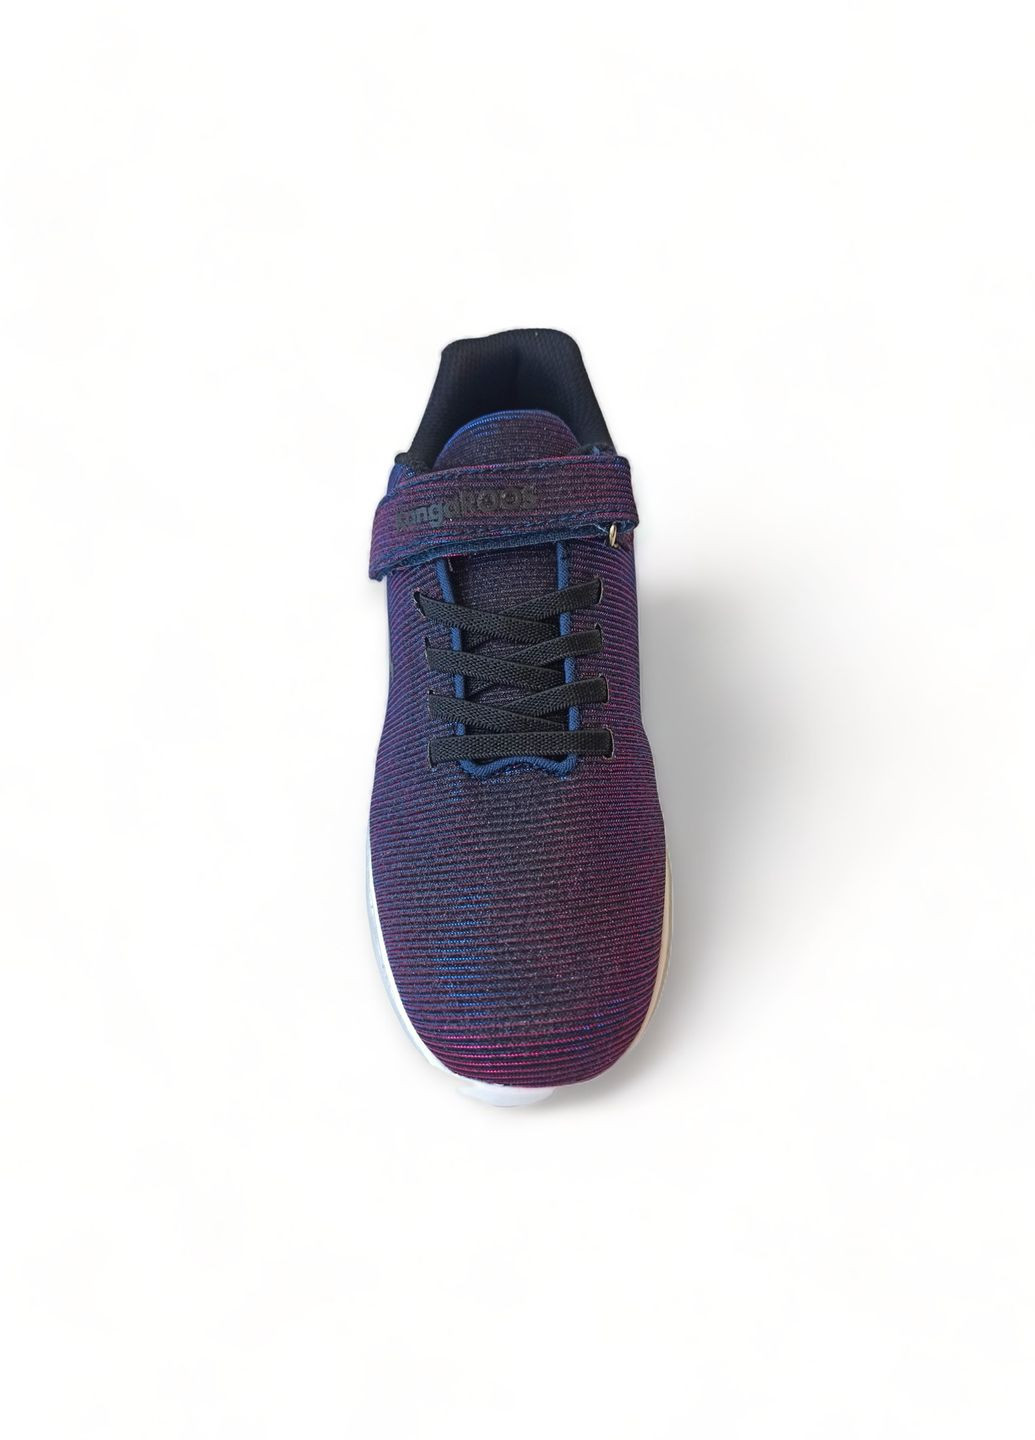 Фіолетові всесезонні кросівки дитячі для дівчинки 18315/4071 сині з рожевим хамелеон з устілкою memory foam (33) Kangaroos